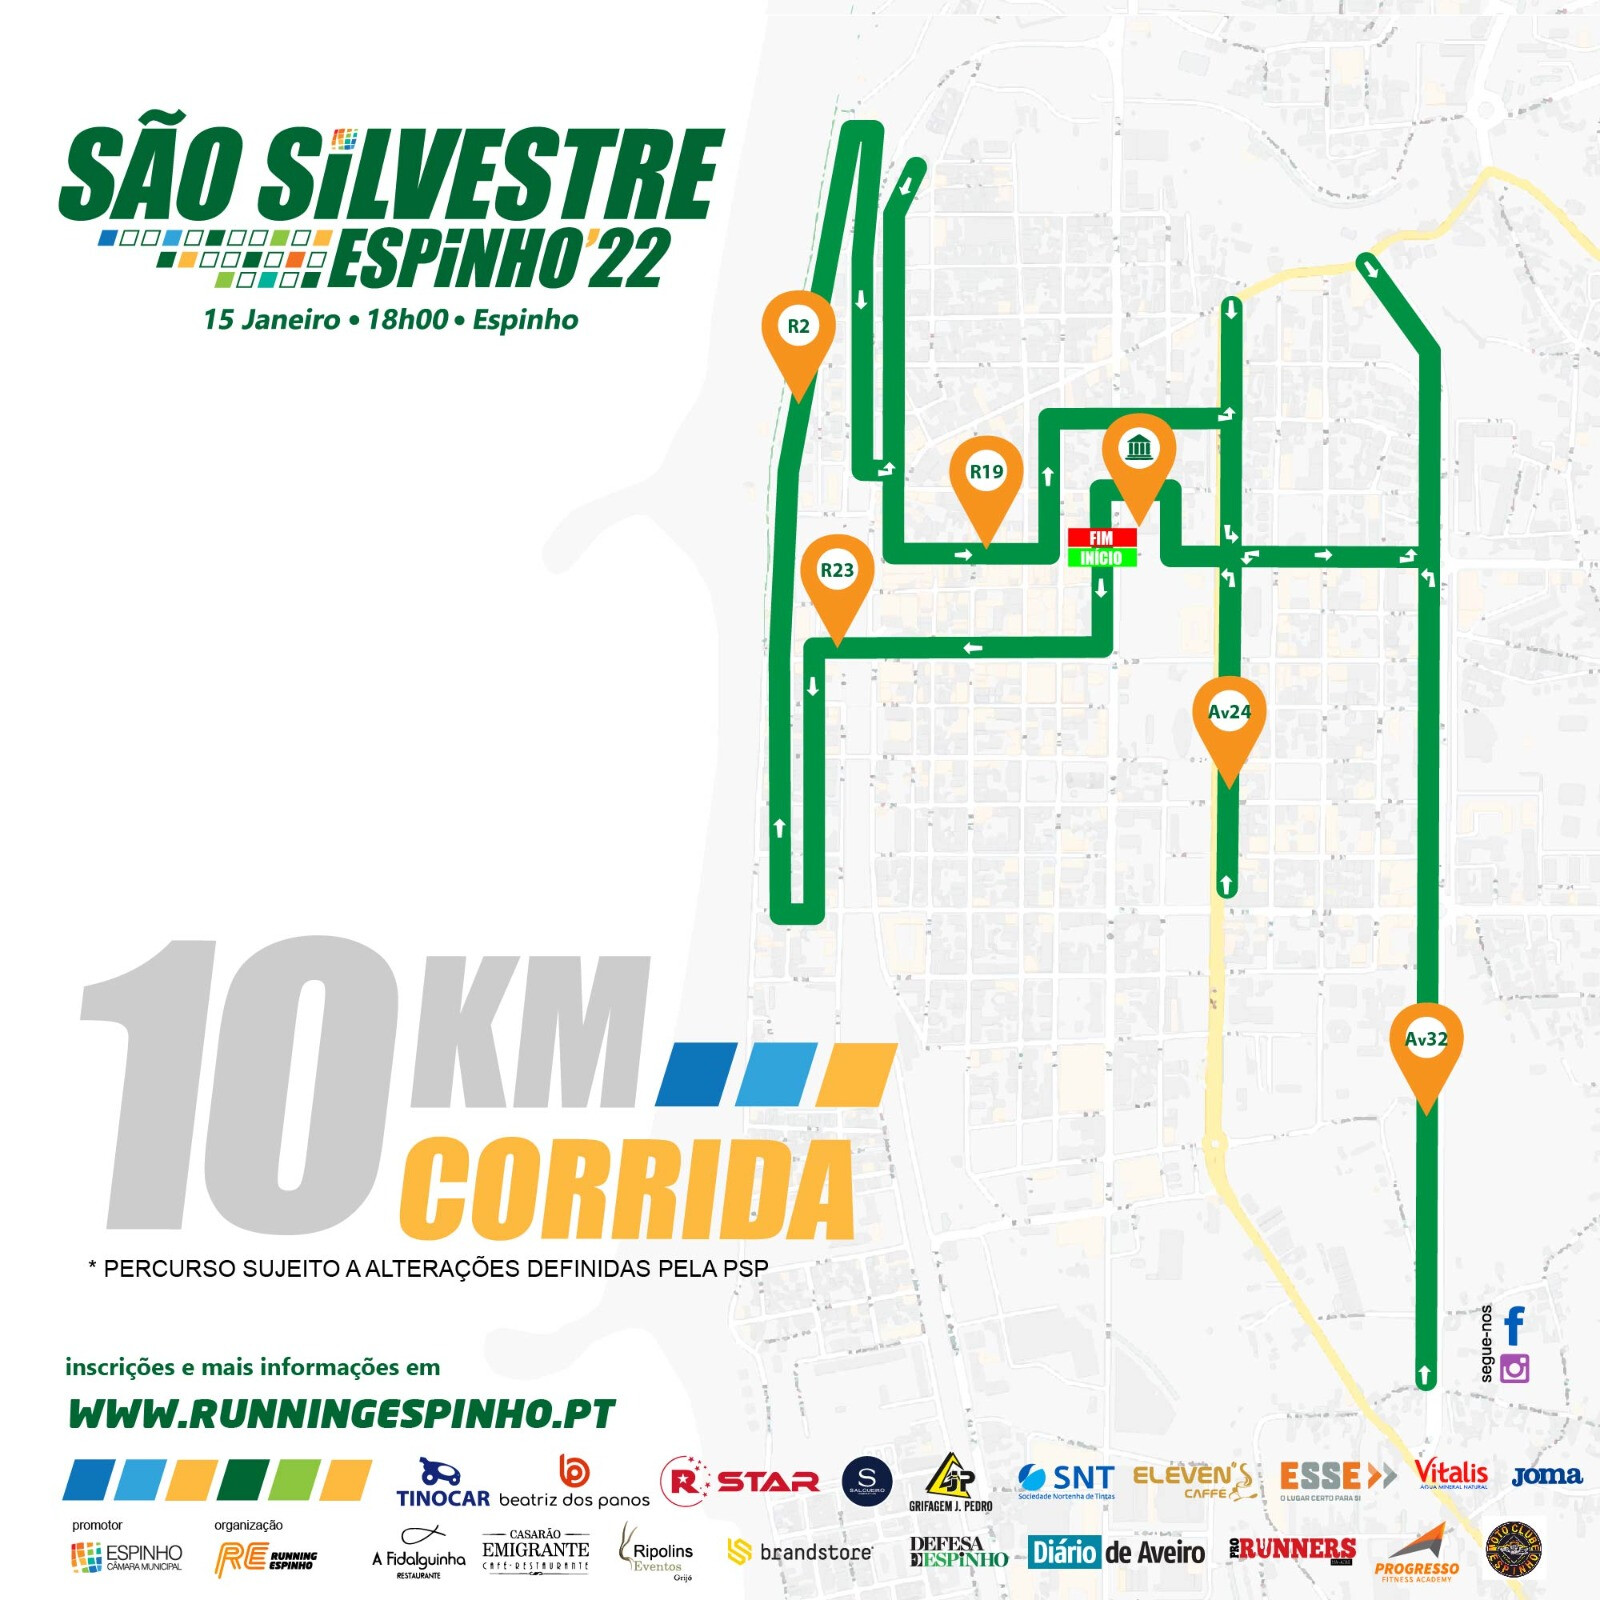 S. Silvestre de Espinho percursos Pro Runners